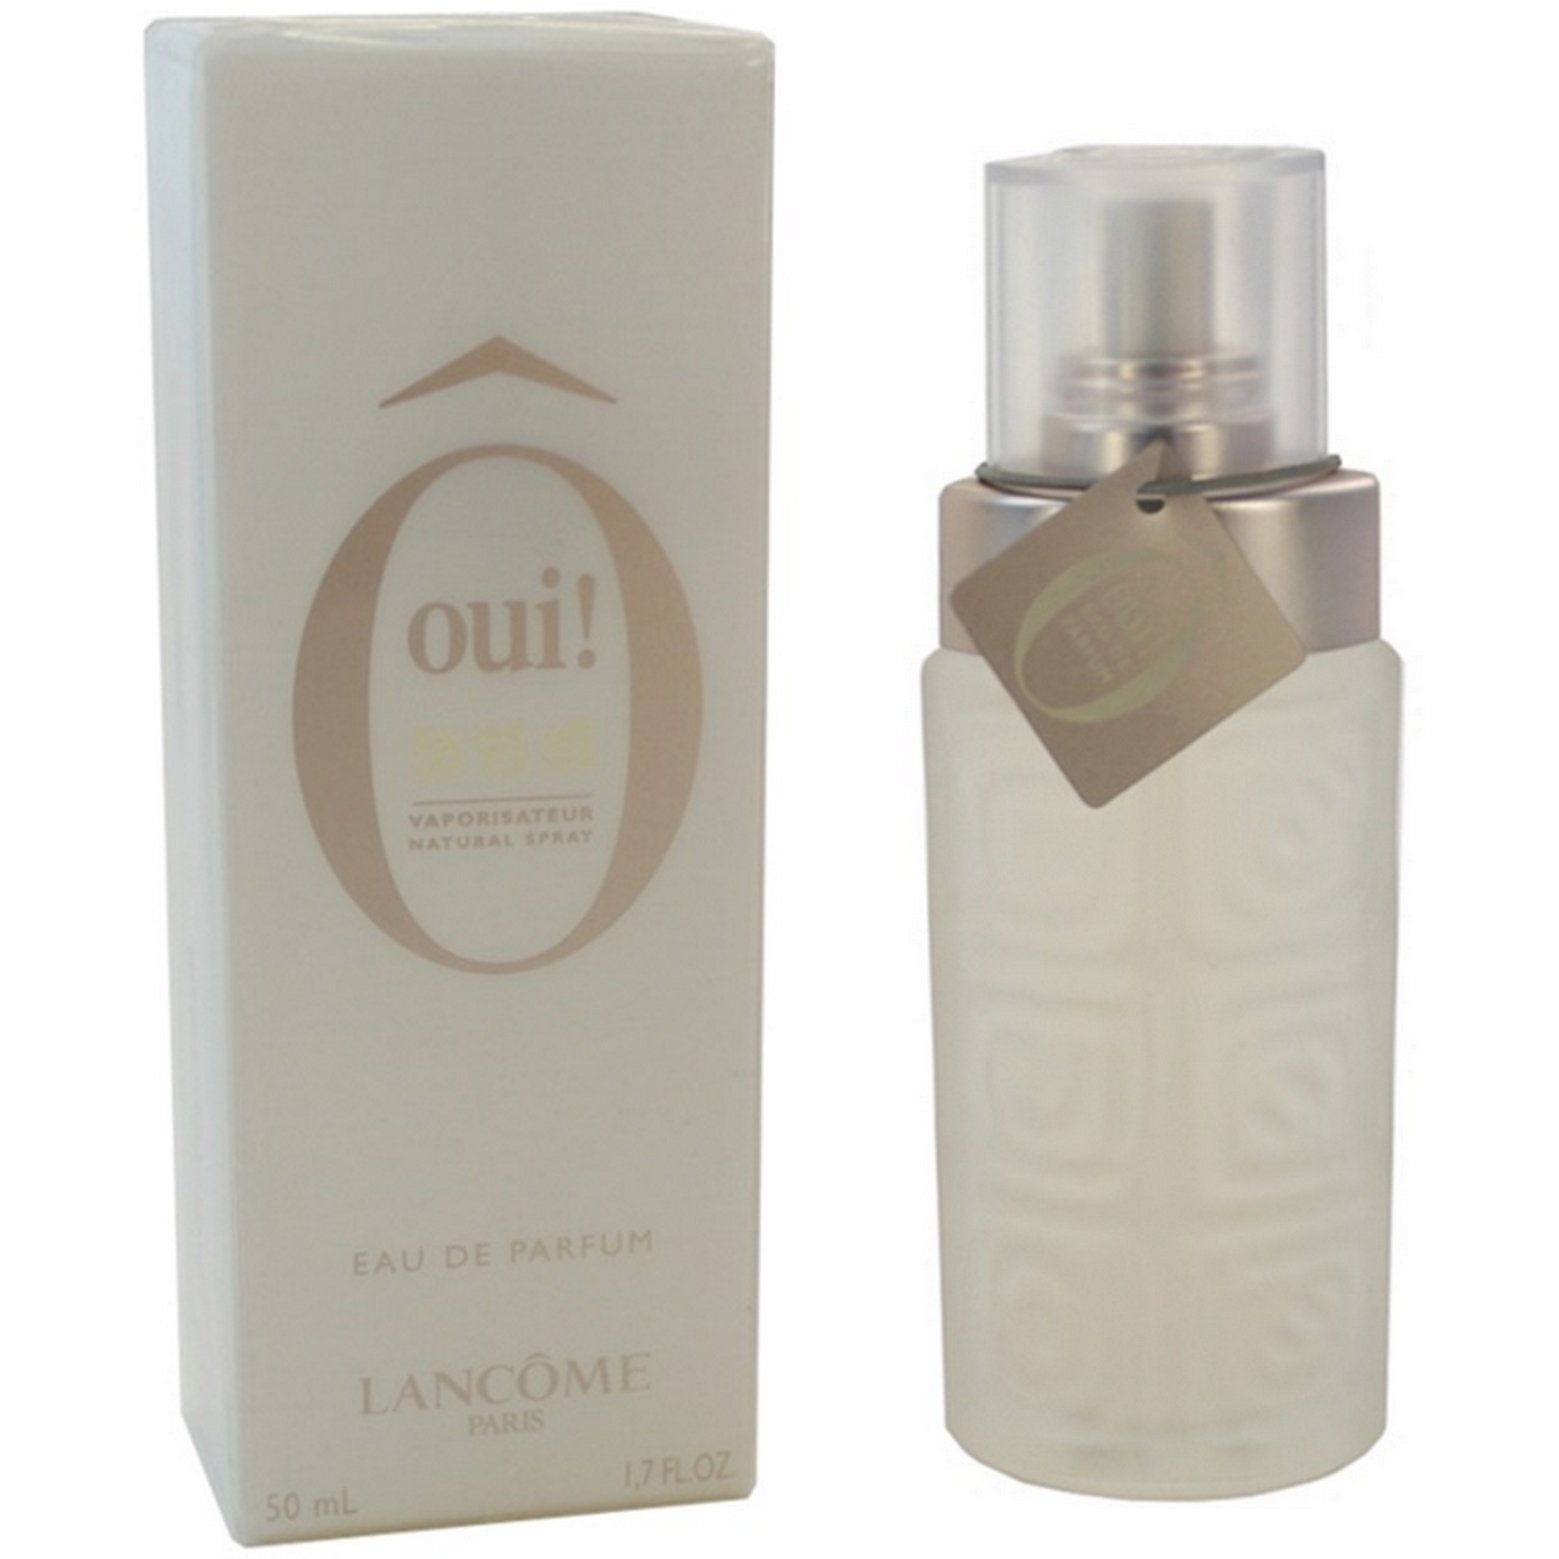 LANCOME Eau de Parfum Lancome Ô oui! pour Femme Eau de Parfum Spray 50 ml | Eau de Parfum